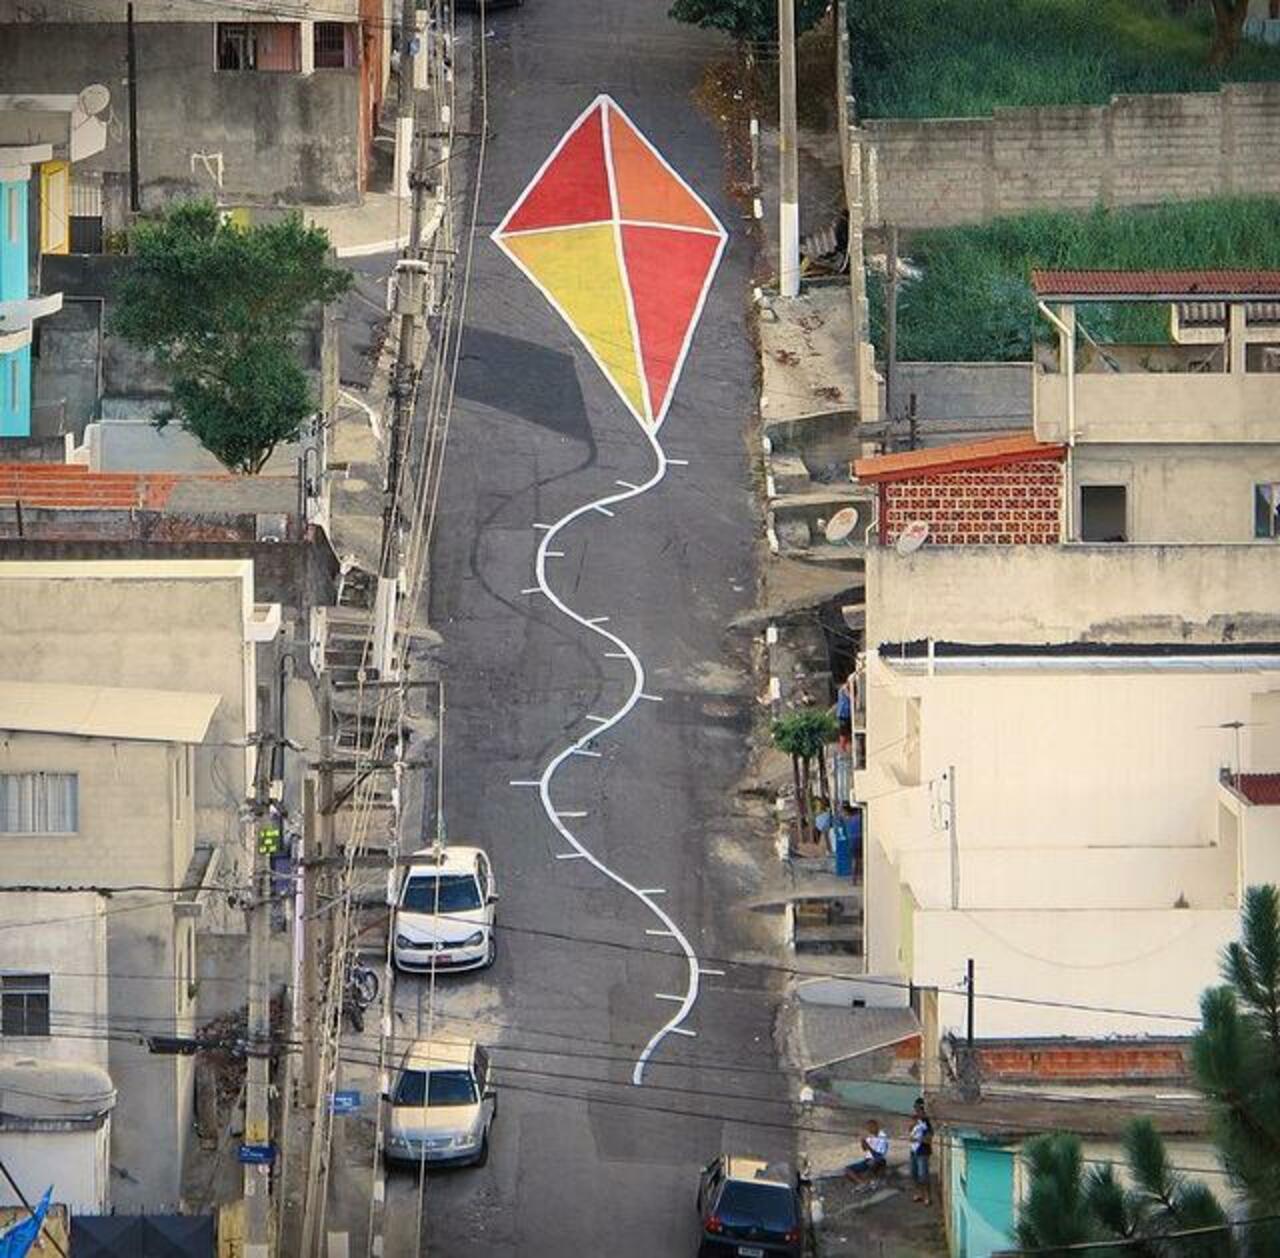 Anamorphic Street Art by Tec Fase in São Paulo 

#art #arte #graffiti #streetart http://t.co/kPvRz7z2mt